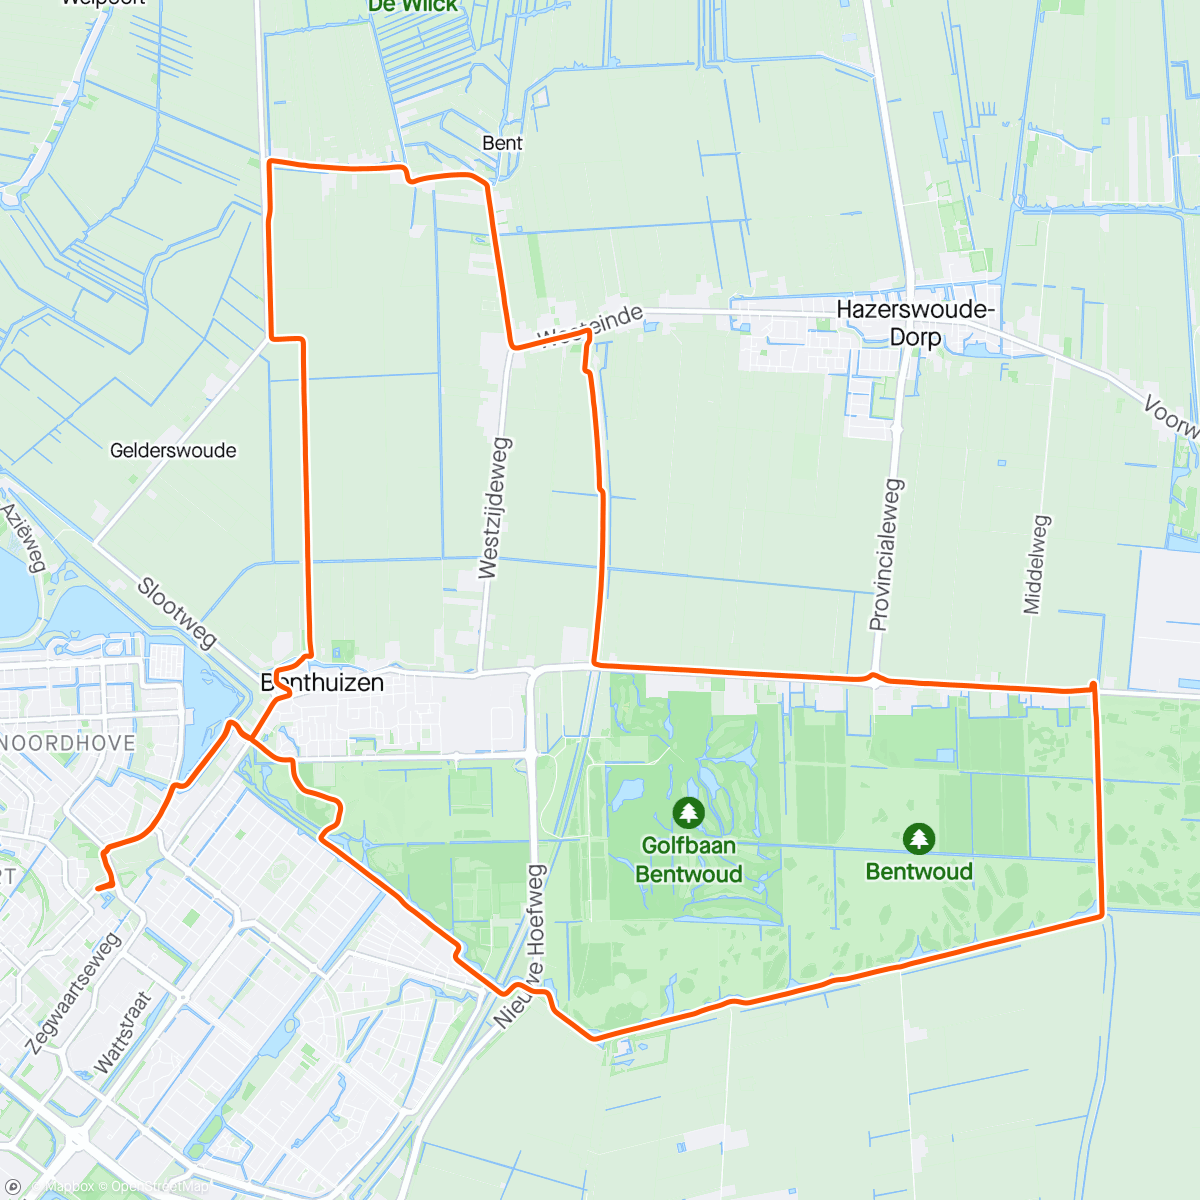 「Fietsen met Lukas op z’n racefiets」活動的地圖